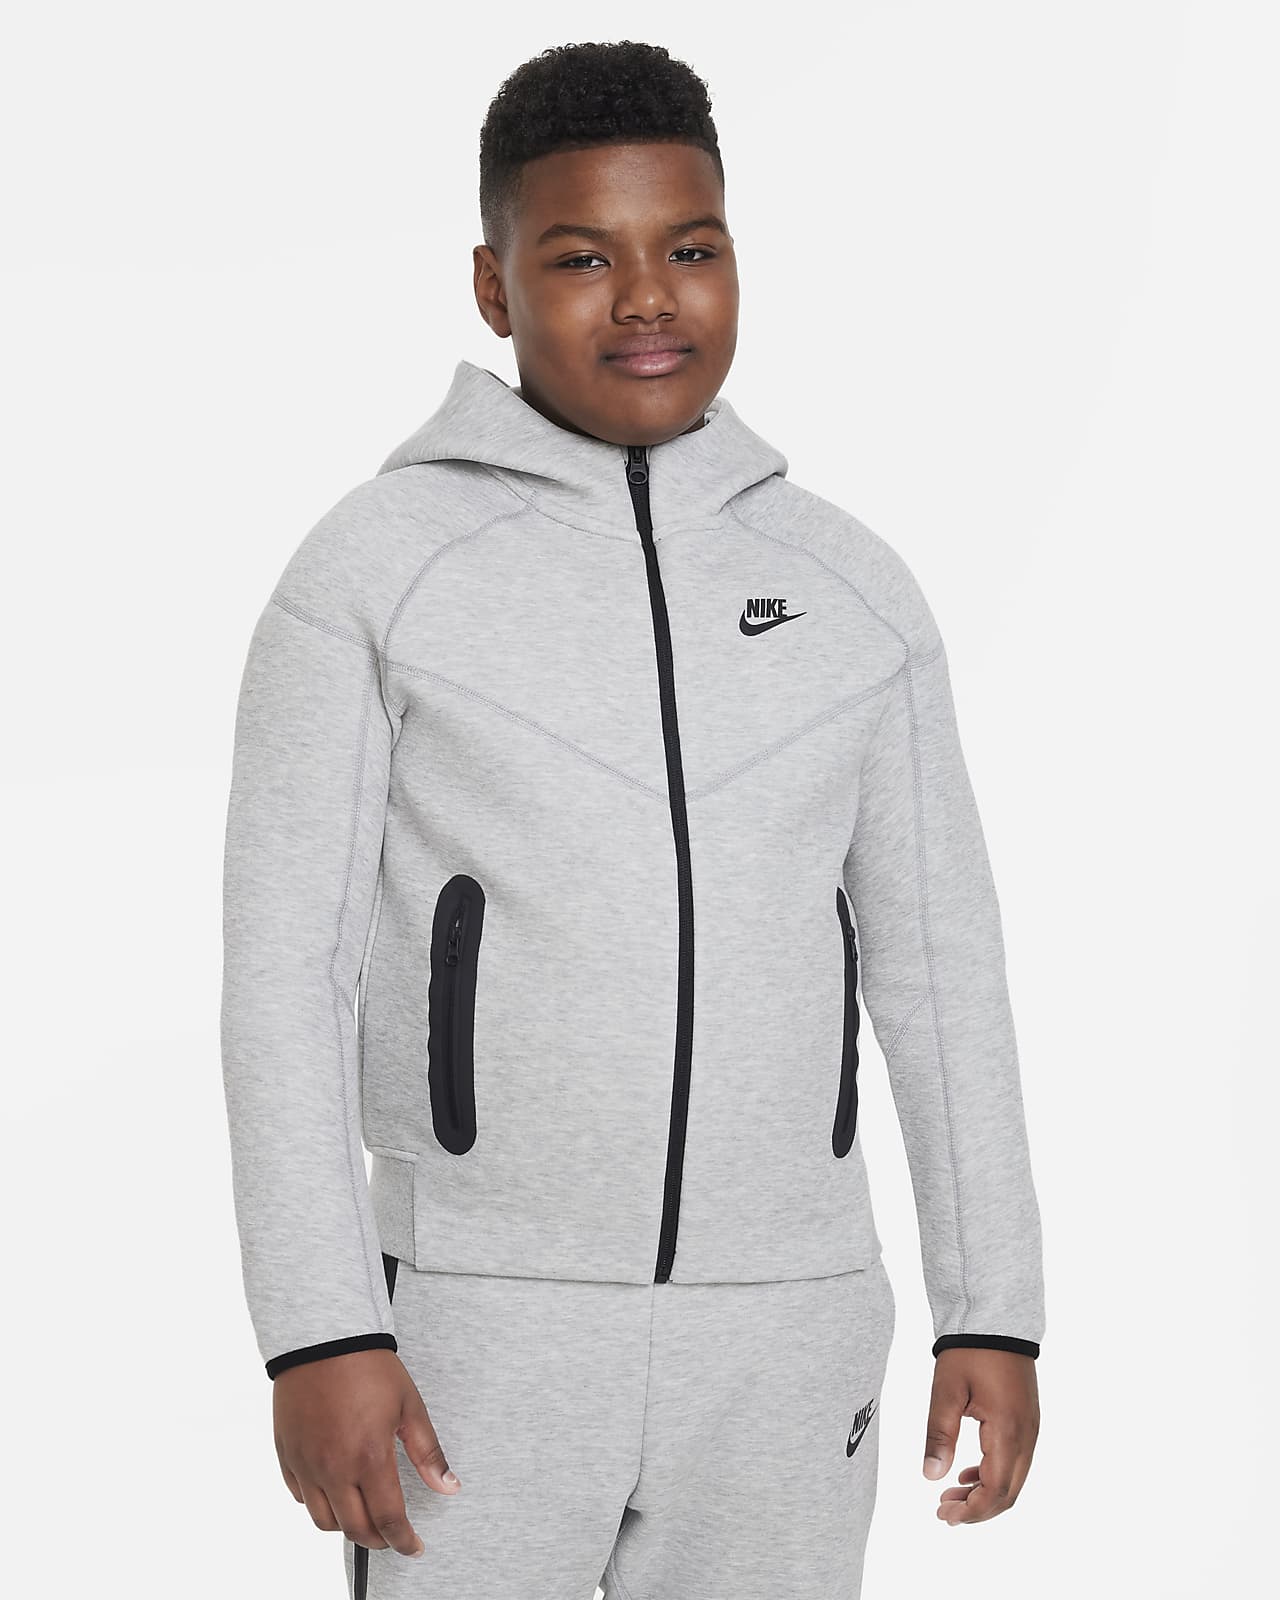 Μπλούζα με κουκούλα και φερμουάρ σε όλο το μήκος Nike Sportswear Tech Fleece για μεγάλα αγόρια (μεγαλύτερο μέγεθος)